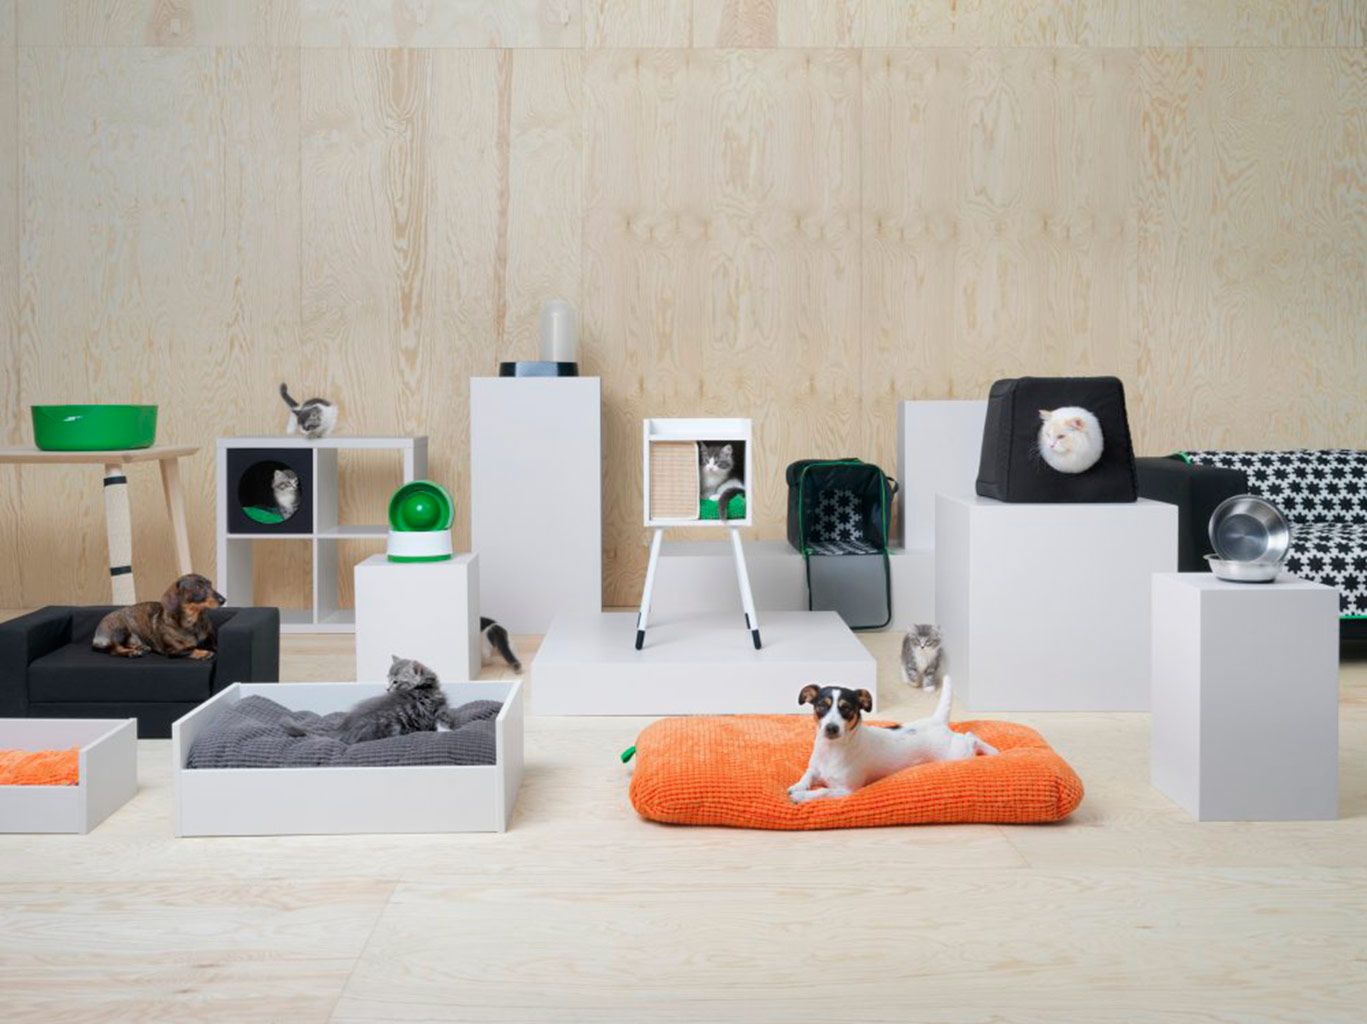 Ikea lanza una colección para mascotas - Mascotas